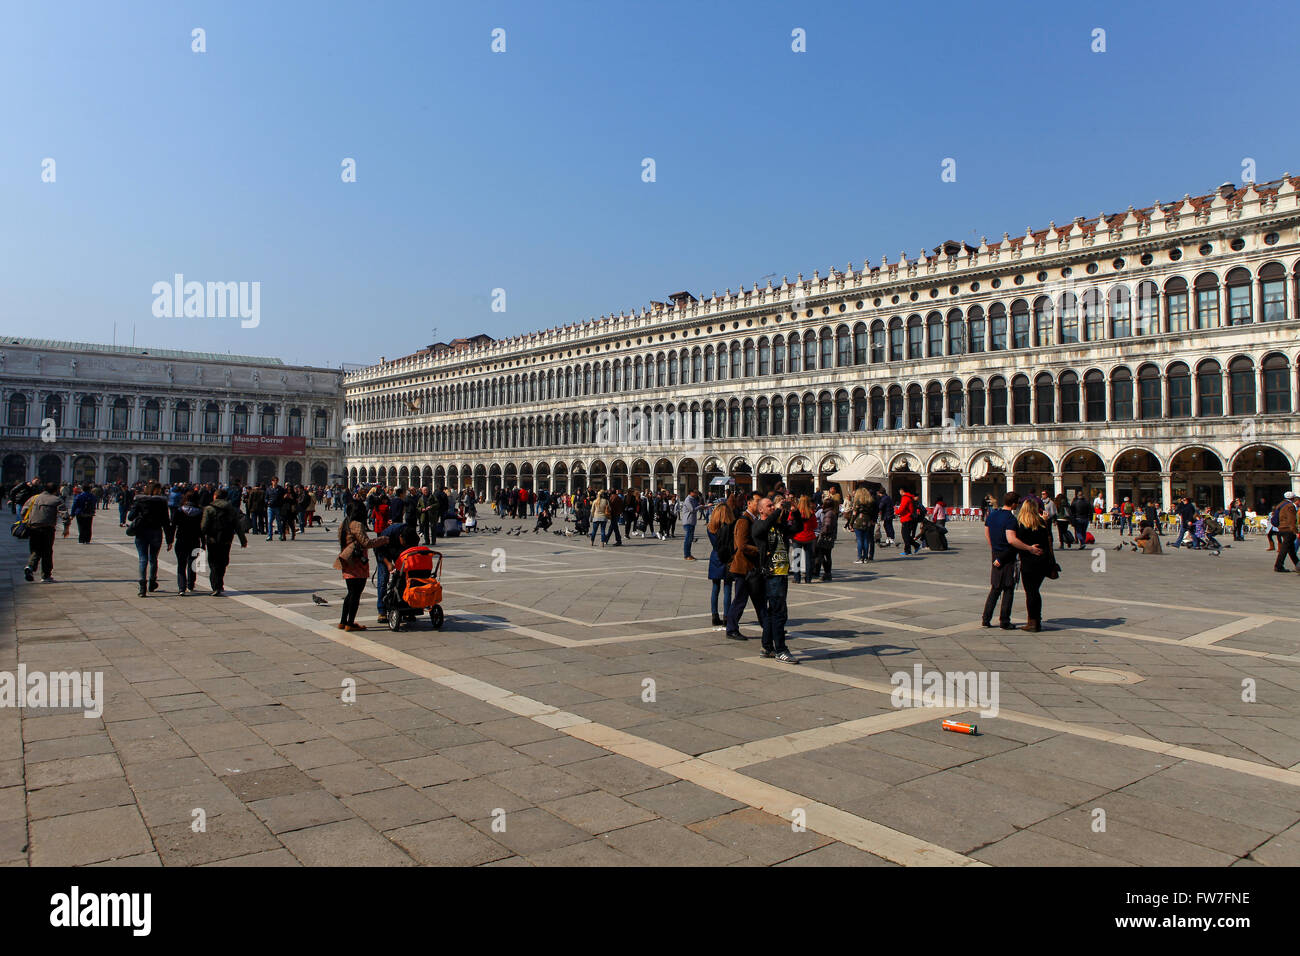 Los lugareños y turistas en la Plaza de San Marcos, la principal plaza pública de la ciudad de Venecia, Italia, Foto de stock